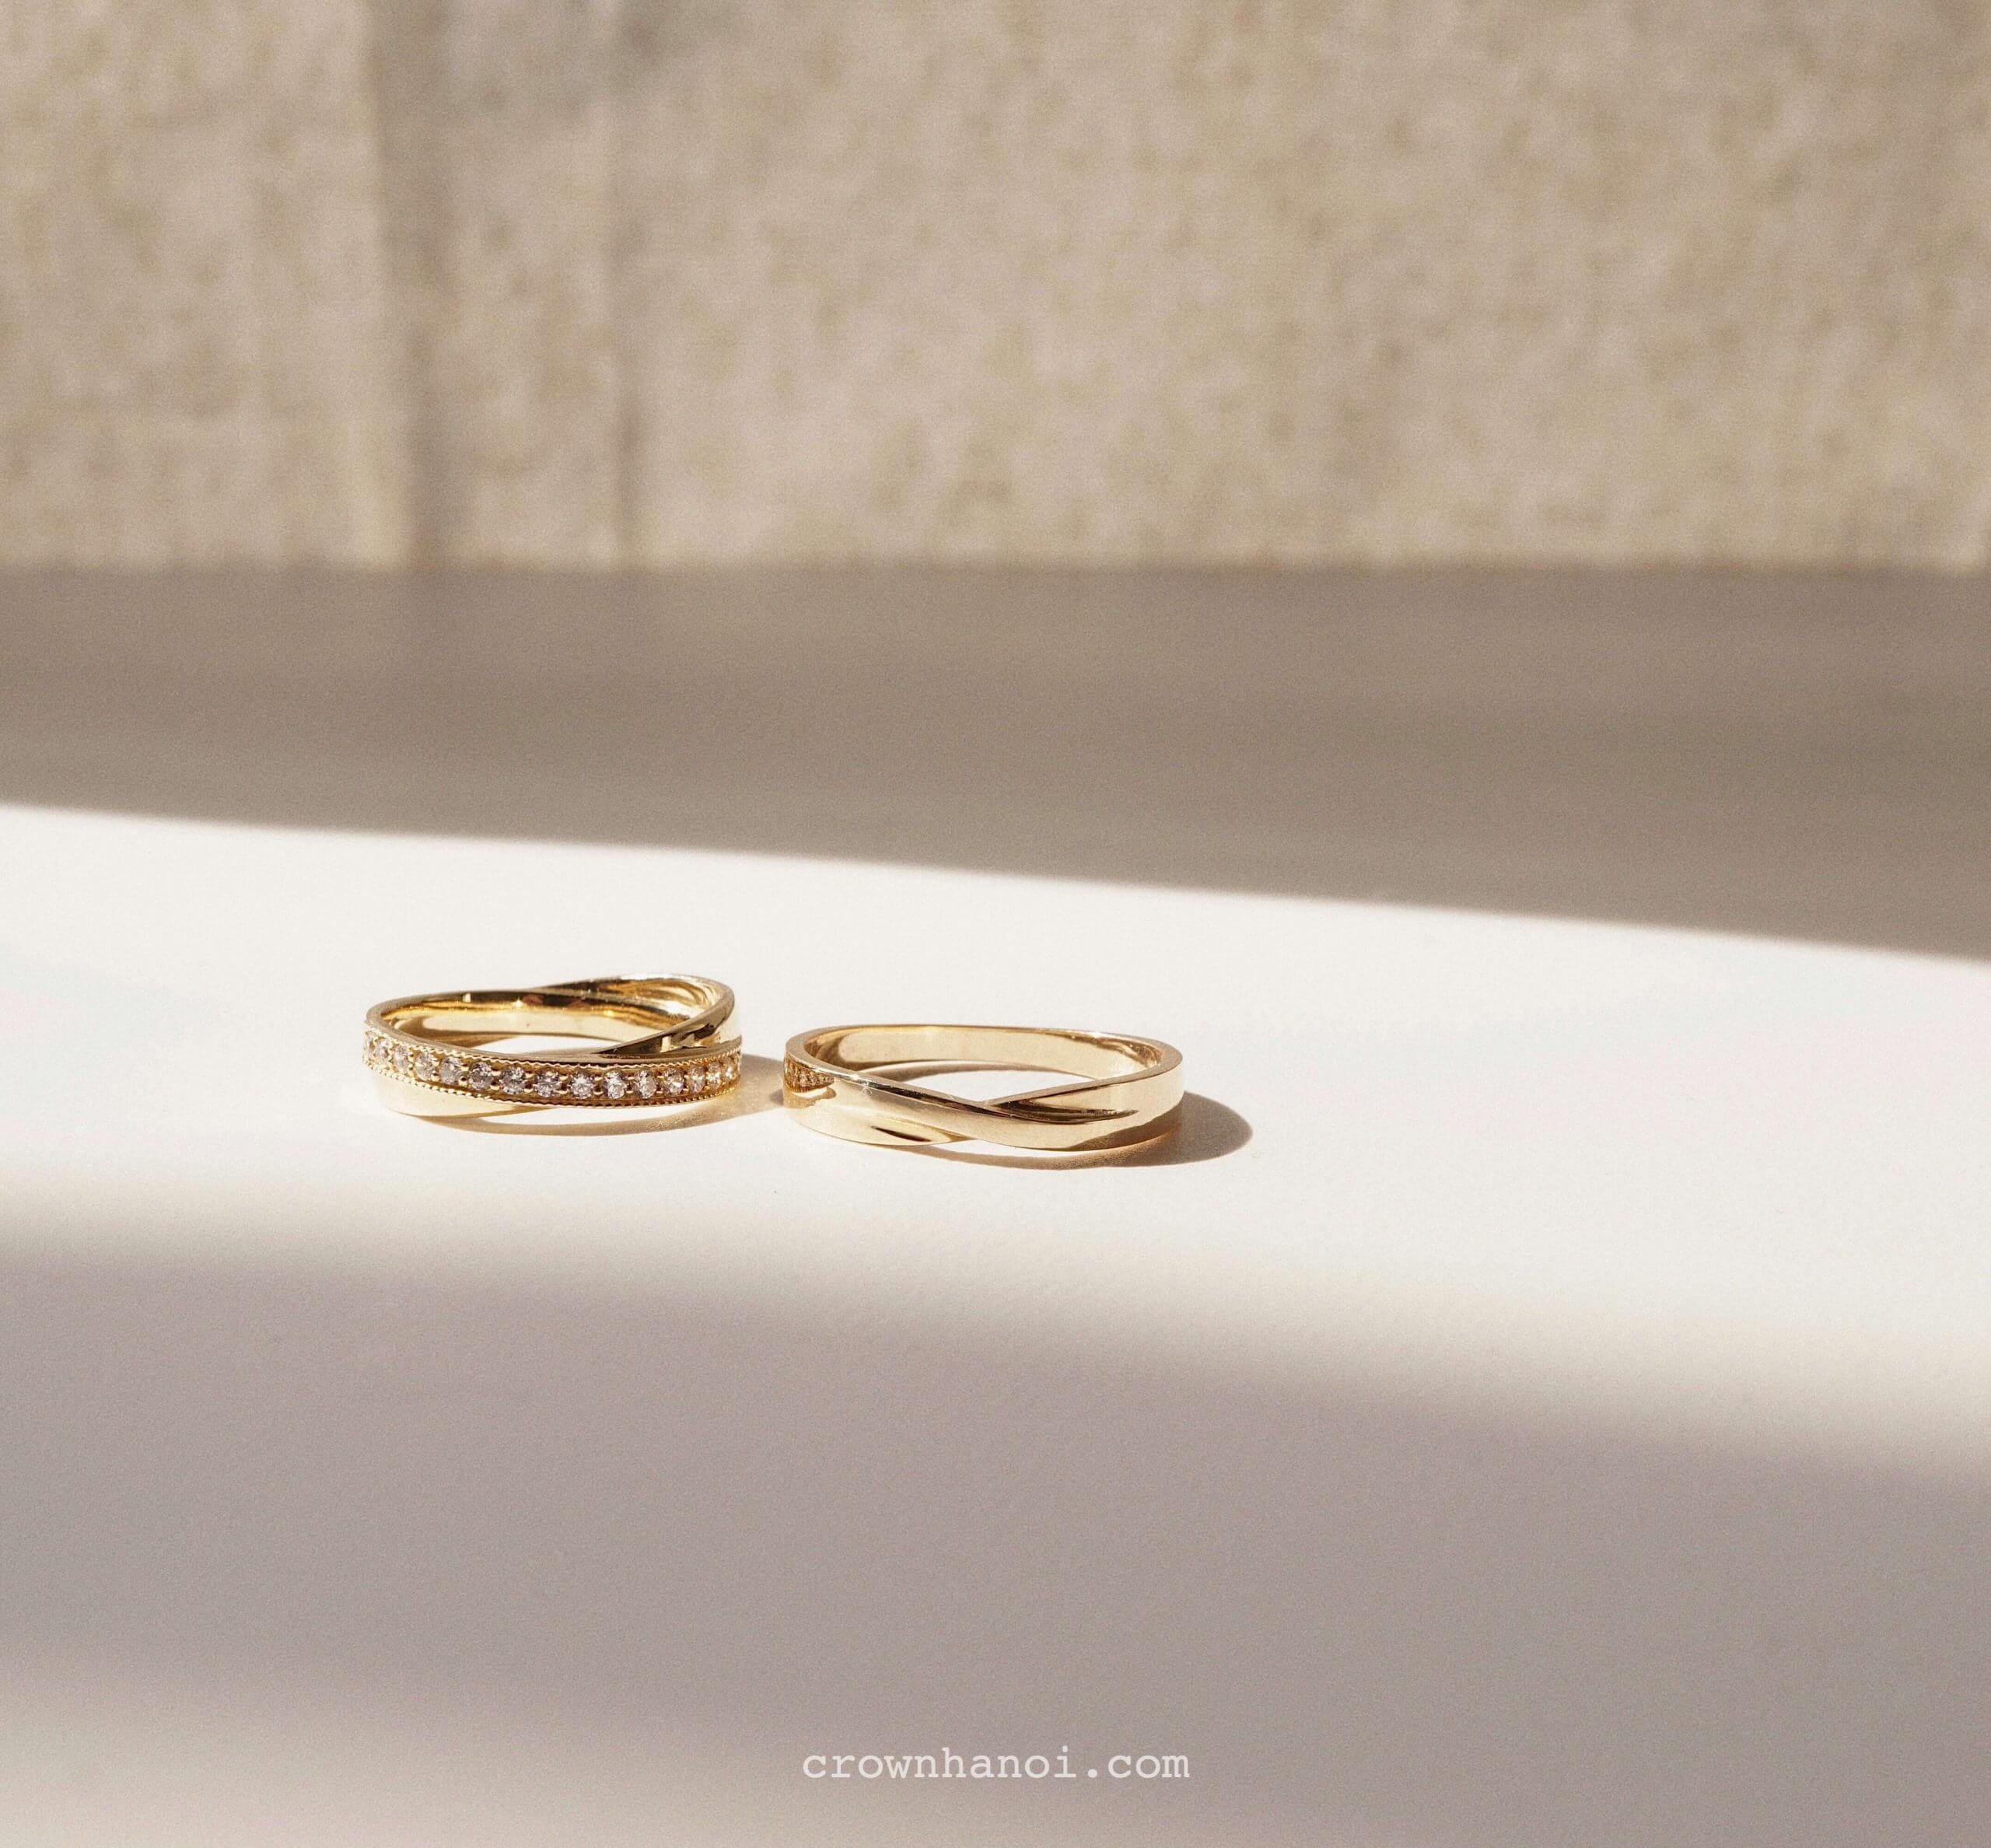 Hướng dẫn chọn cặp nhẫn cưới đẹp và phù hợp - CROWN